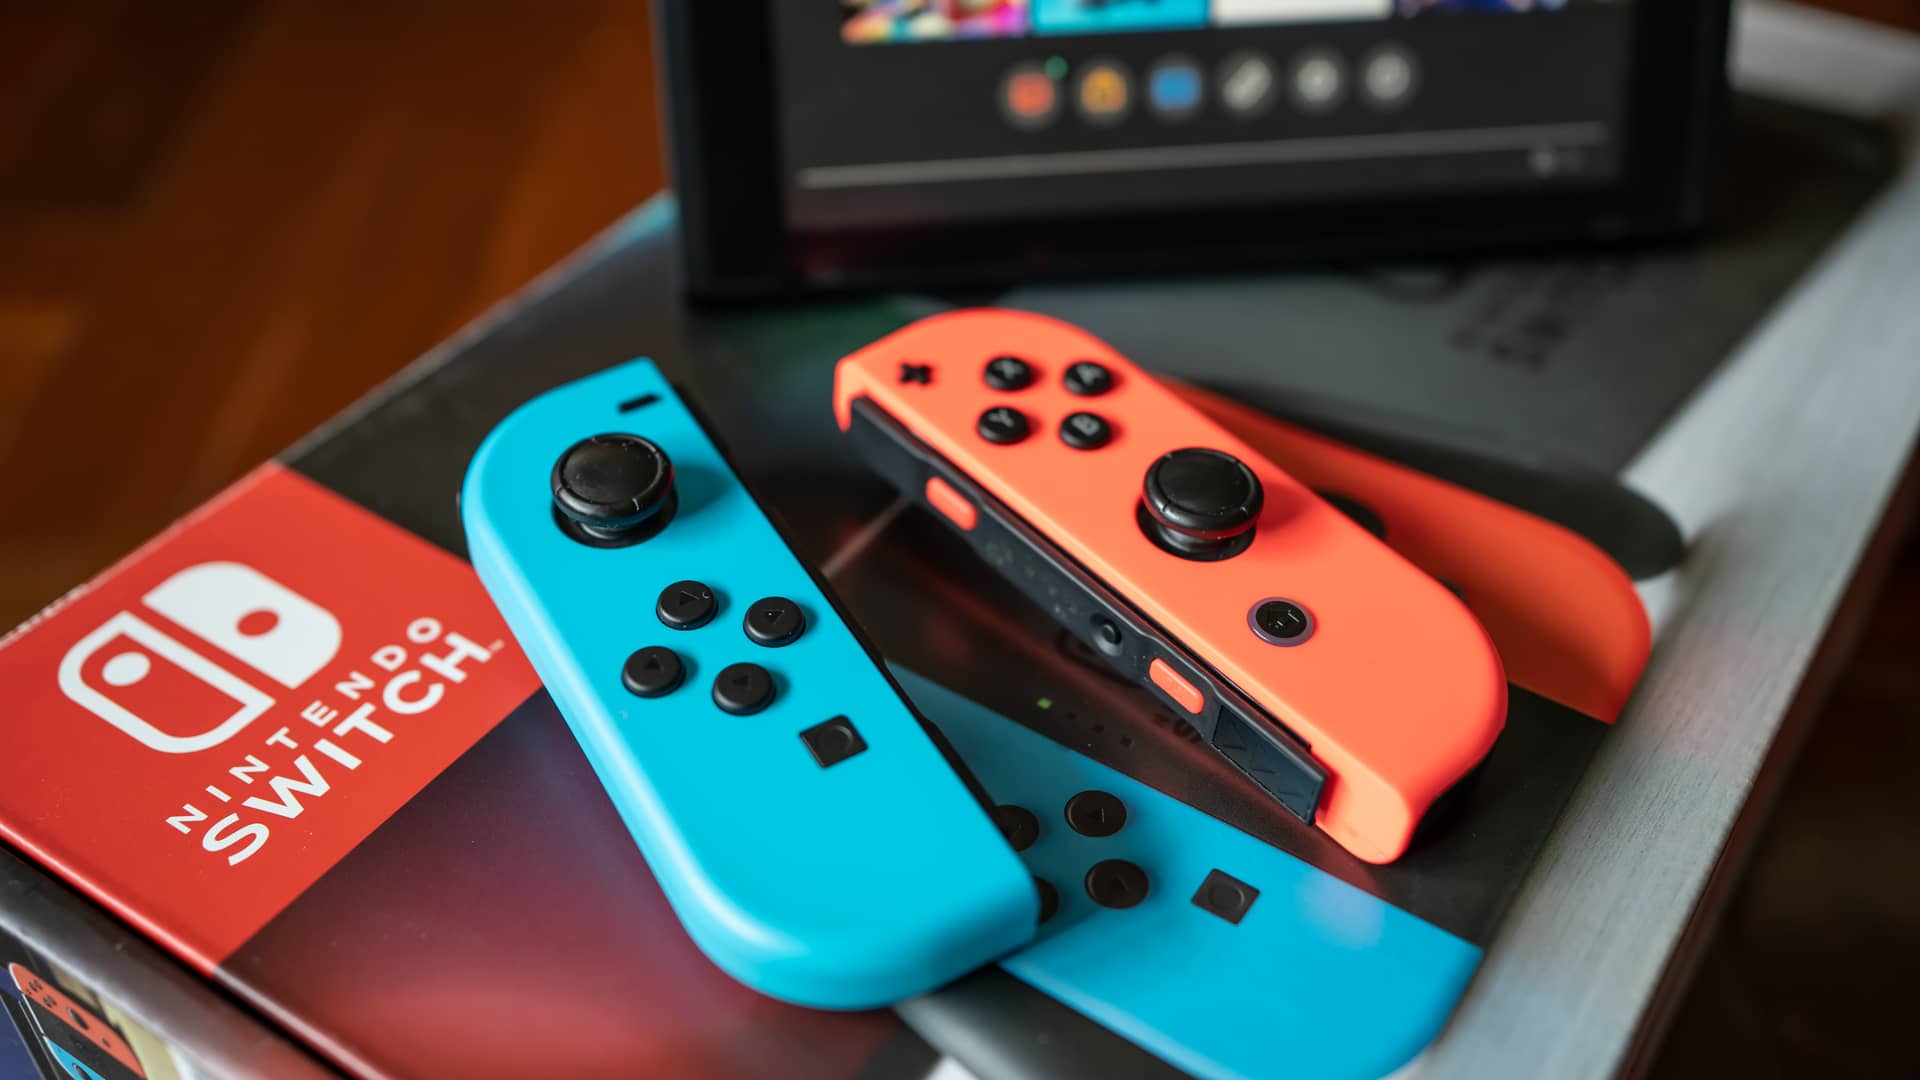 Comprar una Nintendo Switch en Movistar: todas las opciones